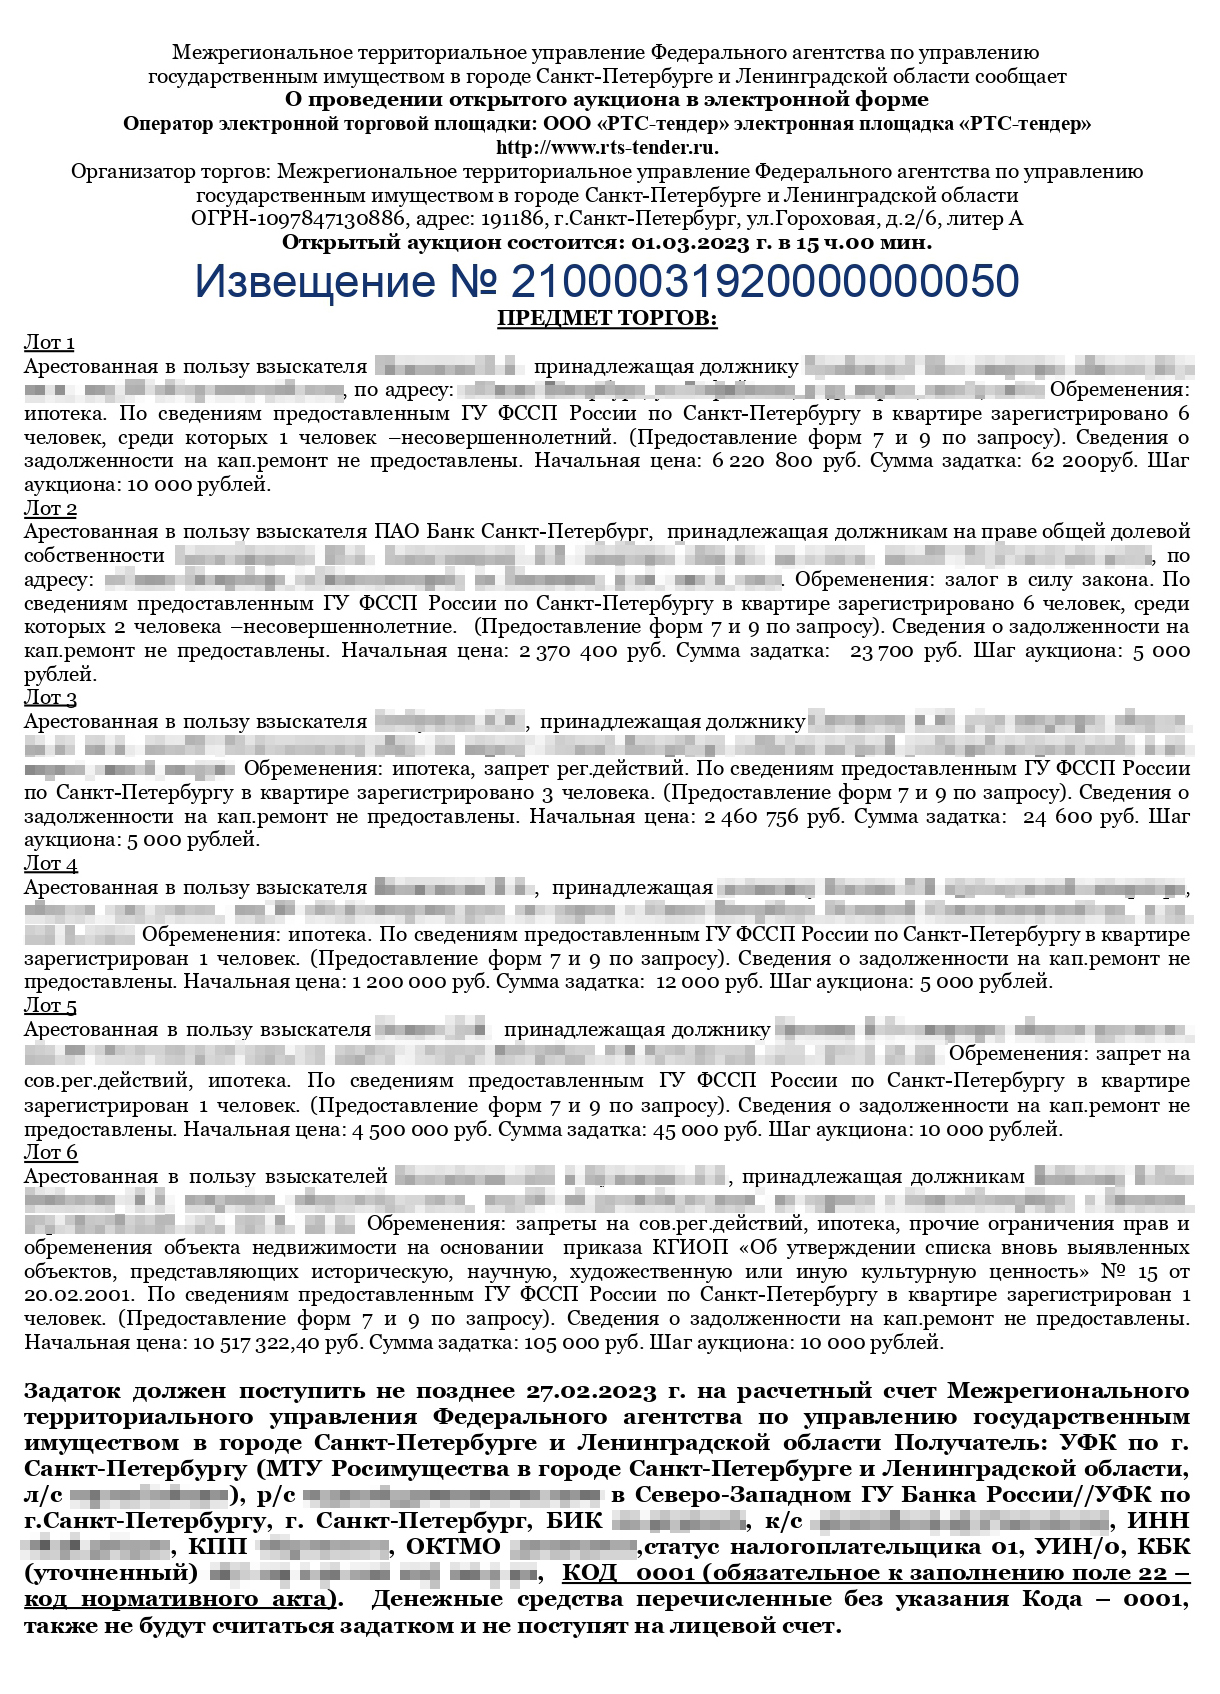 Так выглядит извещение о проведении аукциона — для каждого лота указан свой размер задатка. Источник: torgi.gov.ru